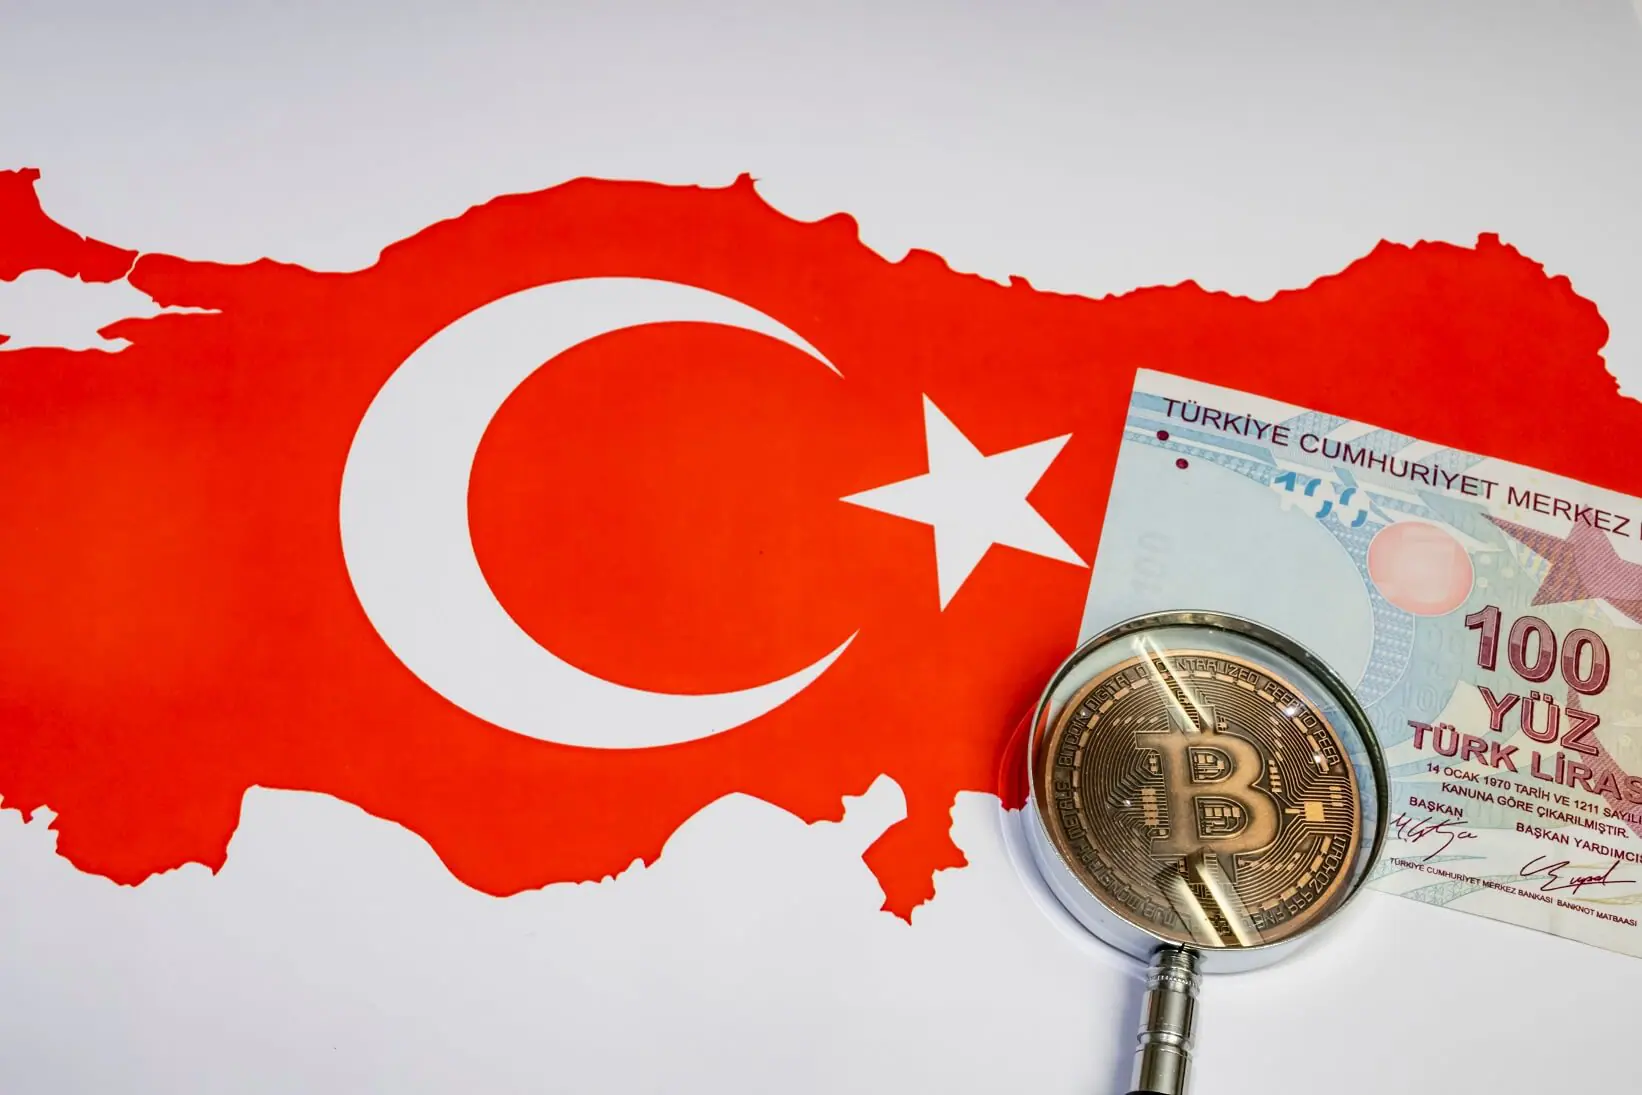 Neue und positive Entwicklungen im Bereich Kryptowährungen in der Türkei